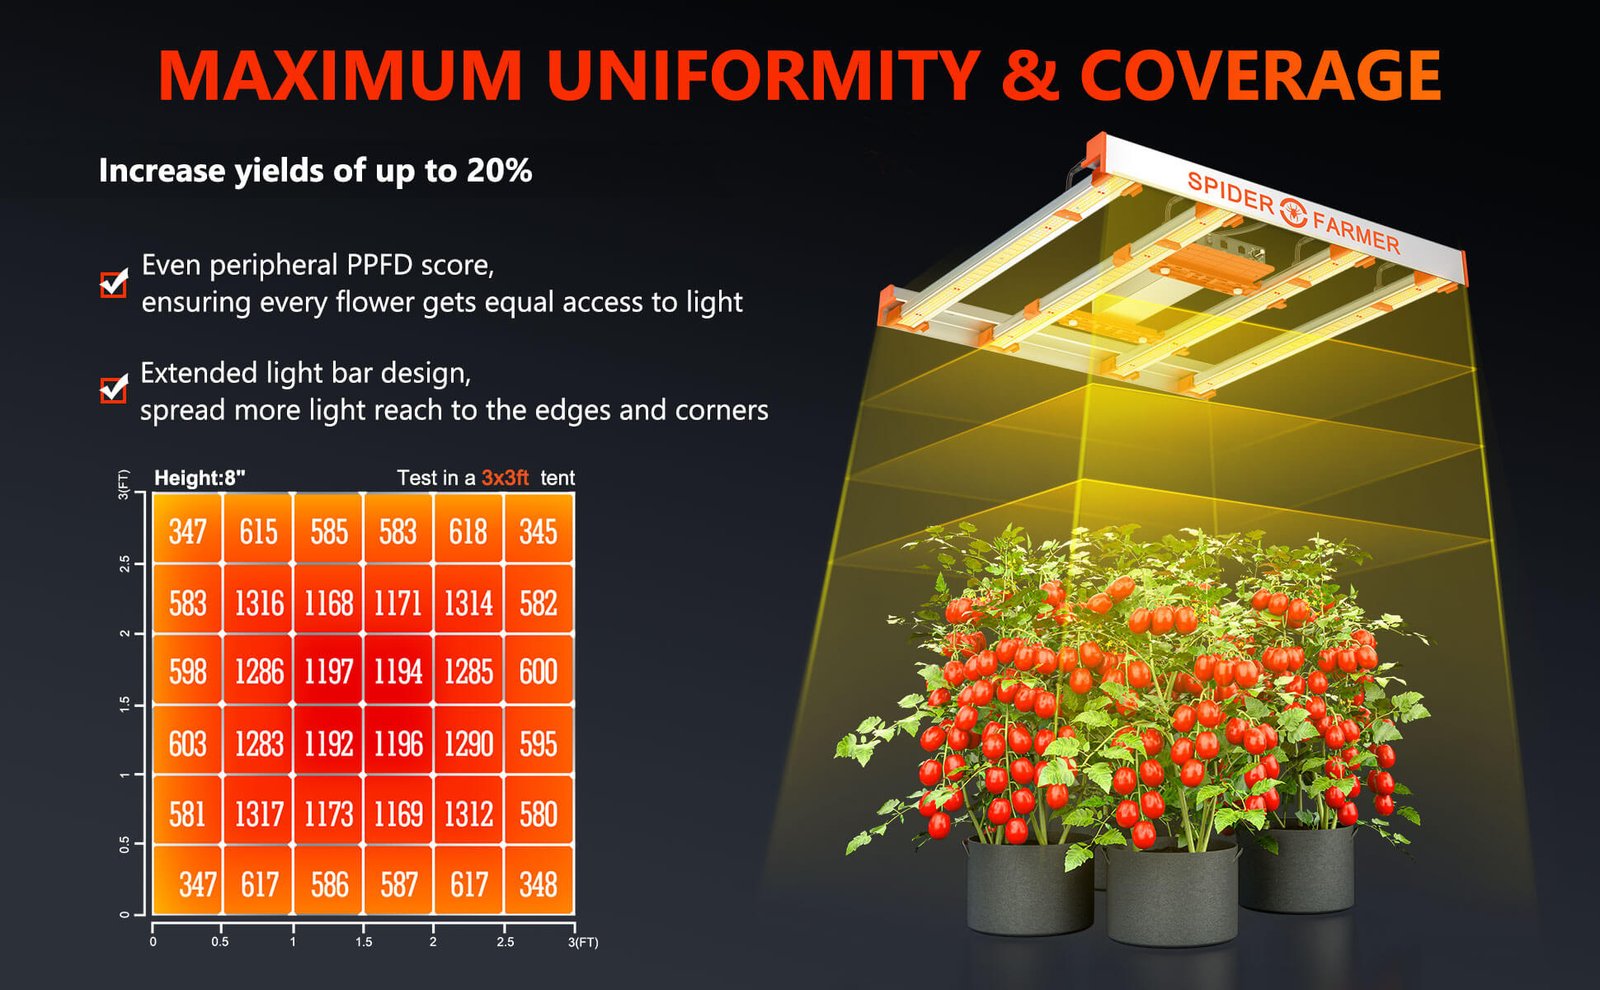 Maximum uniformity & coverage